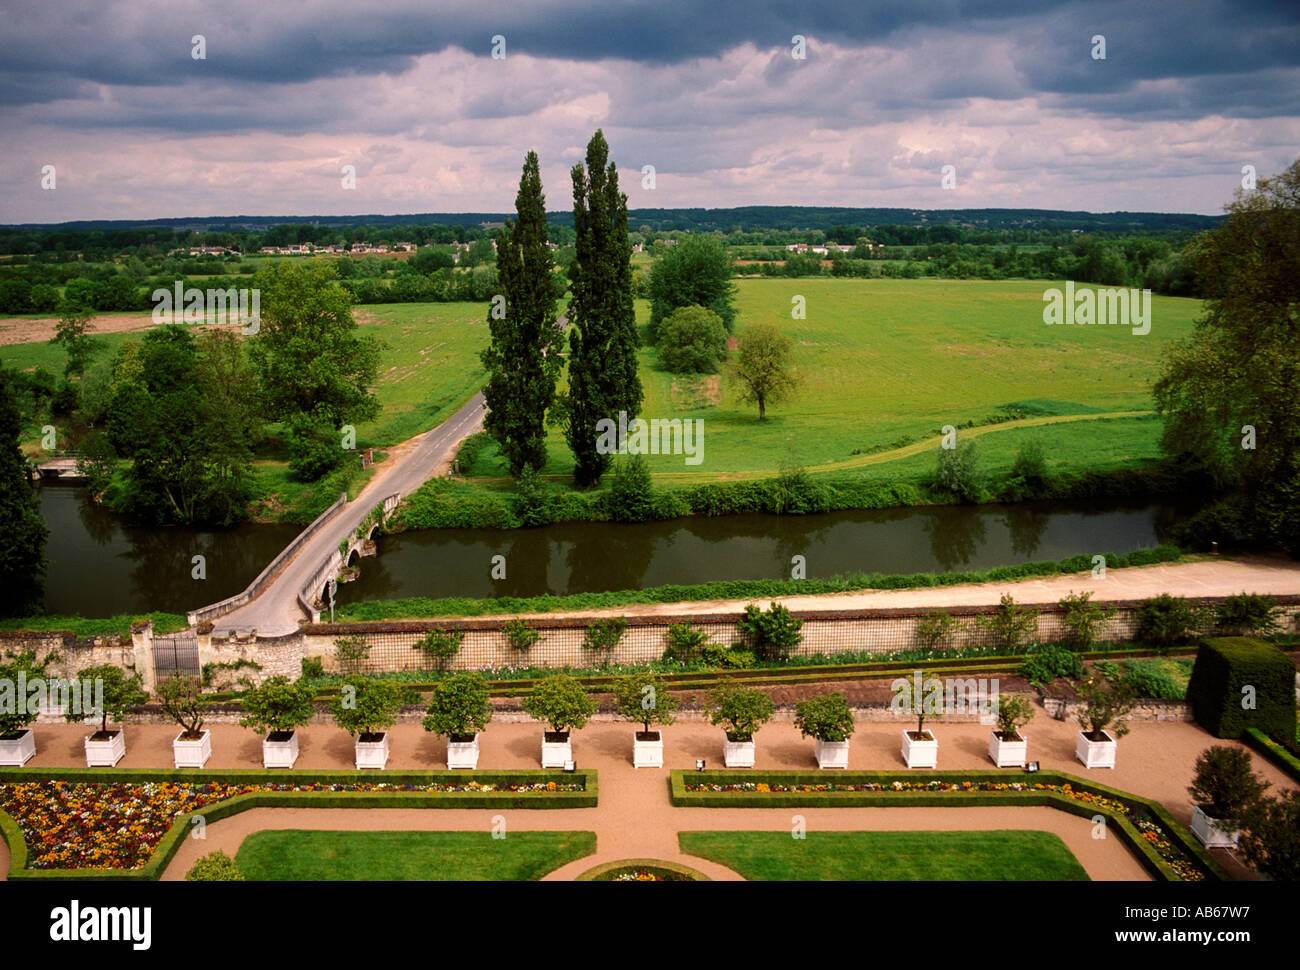 garden, gardens, Chateau d’Usse, Castle of Usse, Chateau Usse, commune, Rigny-Usse, Loire Valley, Indre-et-Loire department, Centre Region, France Stock Photo